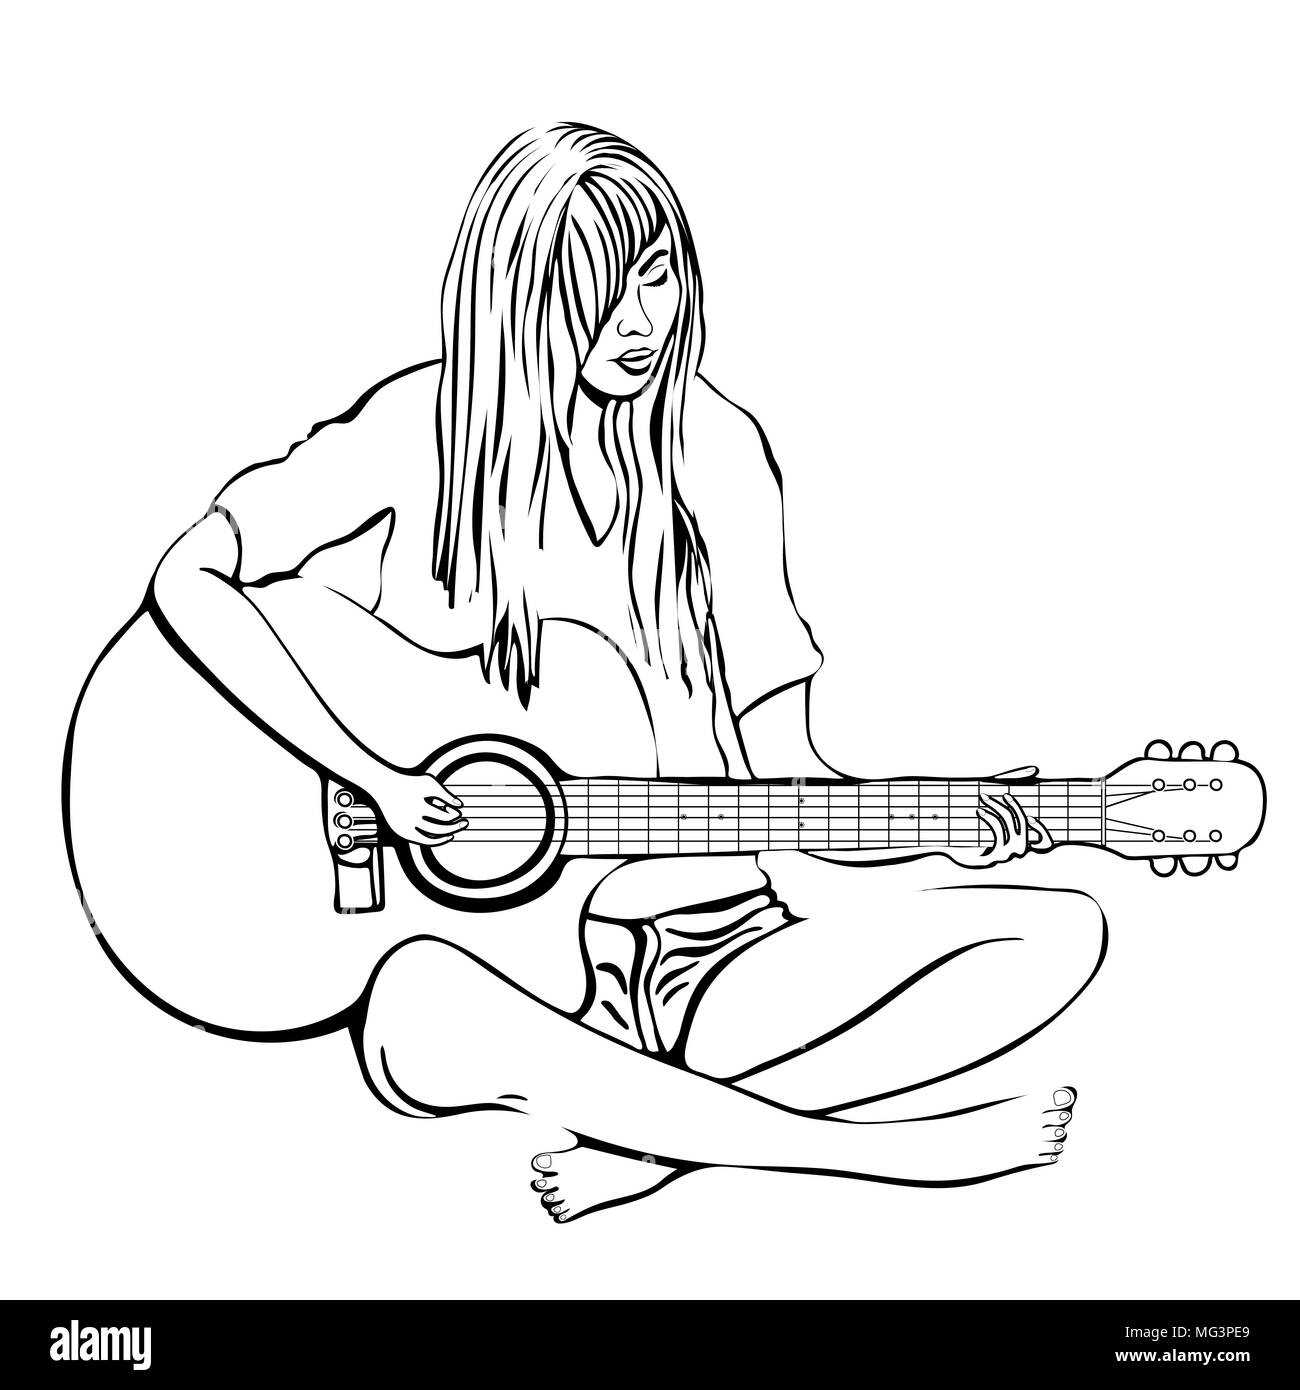 Mädchen mit Gitarre Umriss der Hand zeichnen, Färbung, Vector schwarz und weiß Abbildung. Frau mit langem Haar in Shirt und Shorts barfuß spielen Gitarre si Stock Vektor